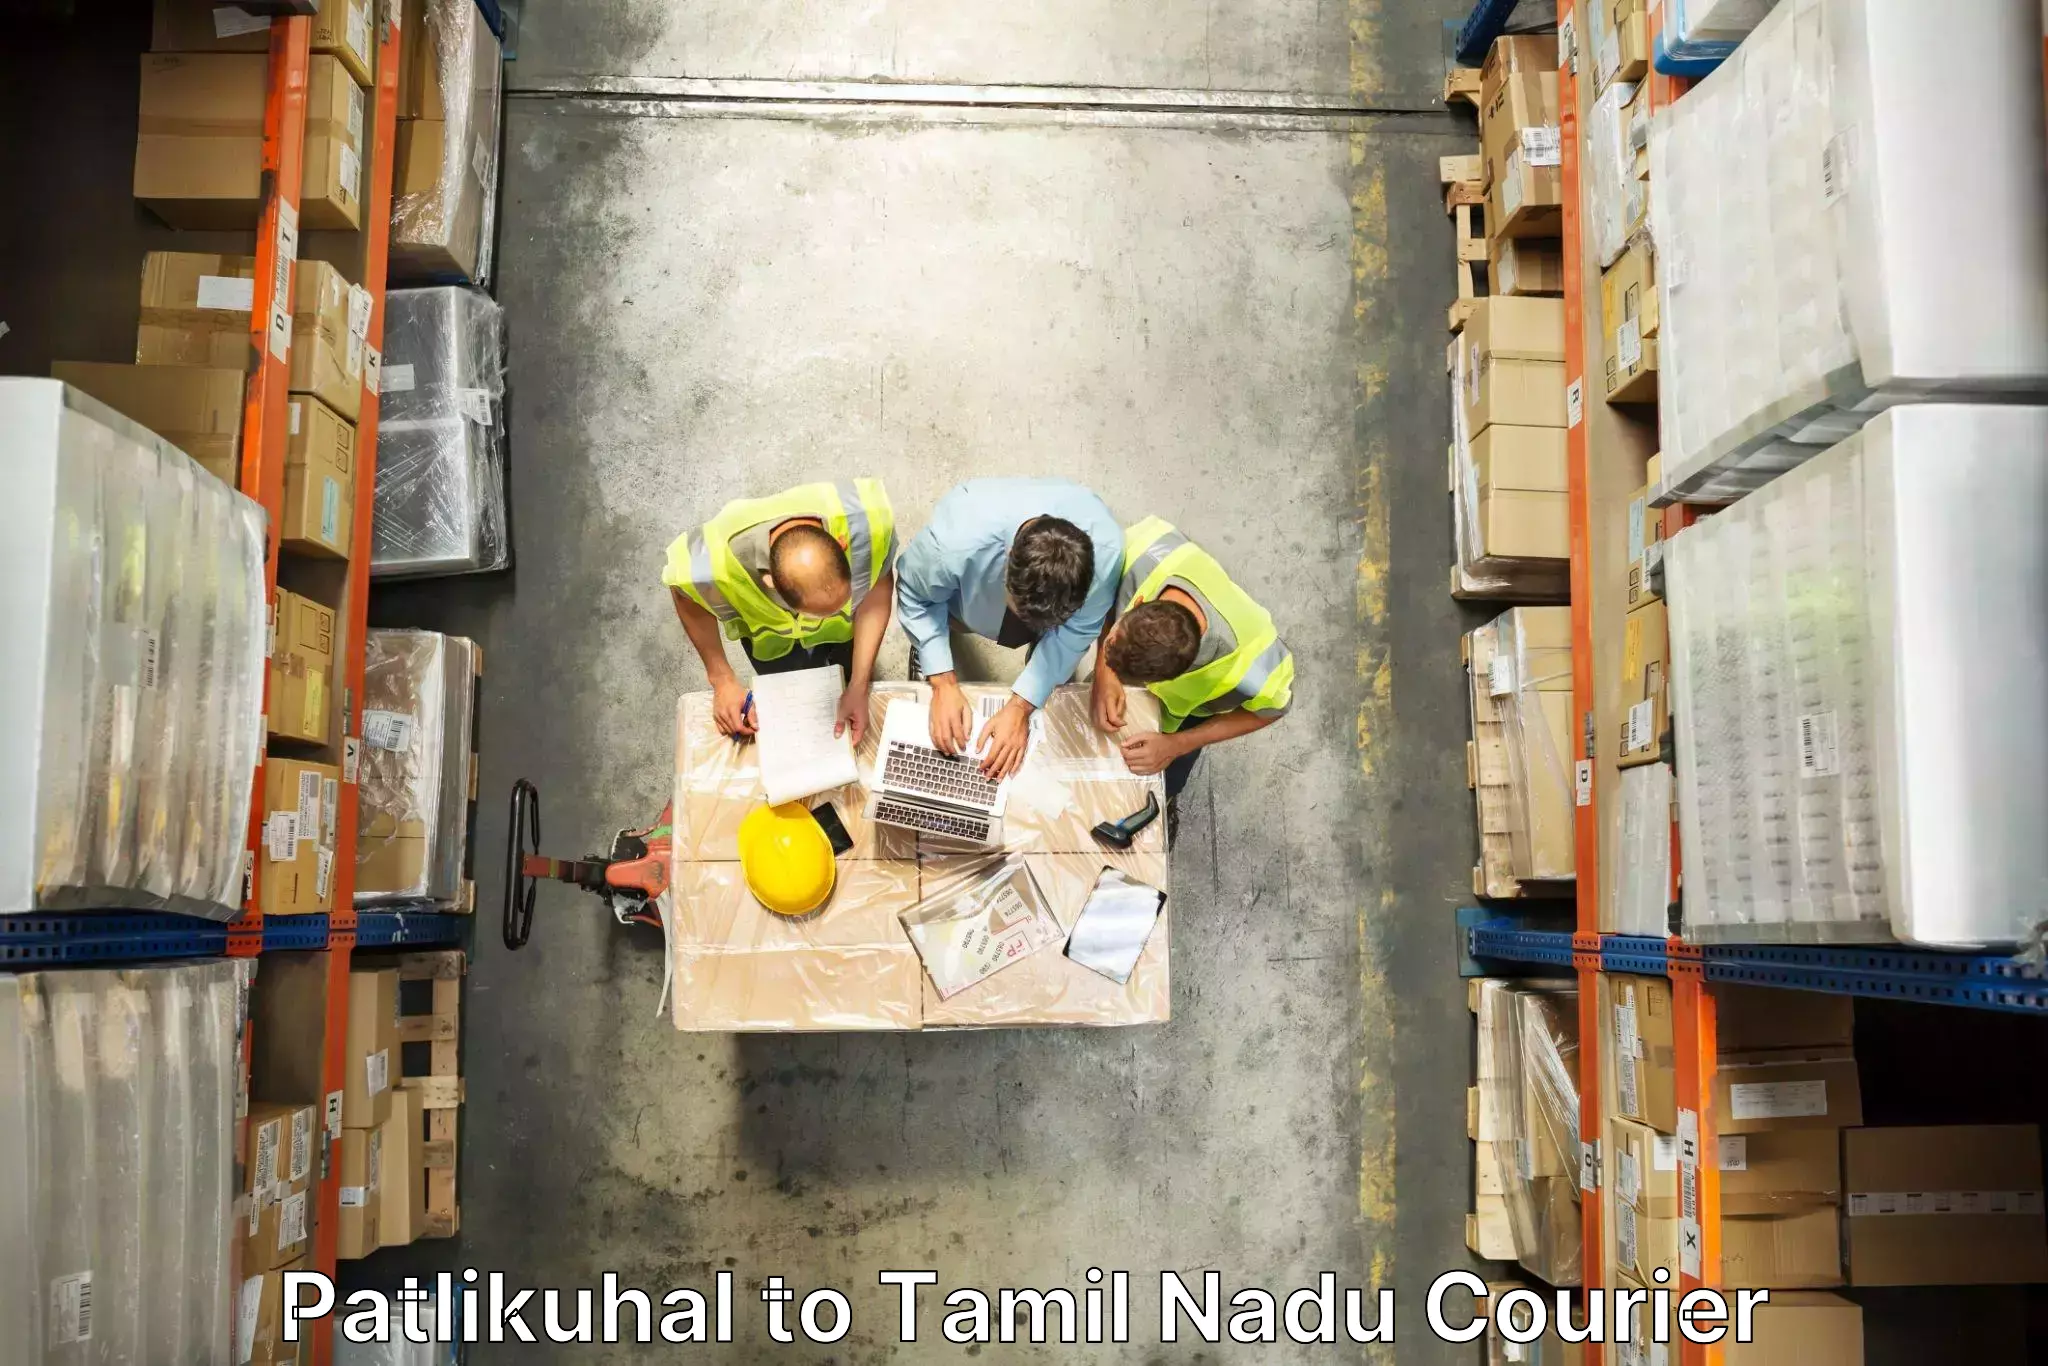 Furniture moving experts Patlikuhal to Kodumudi